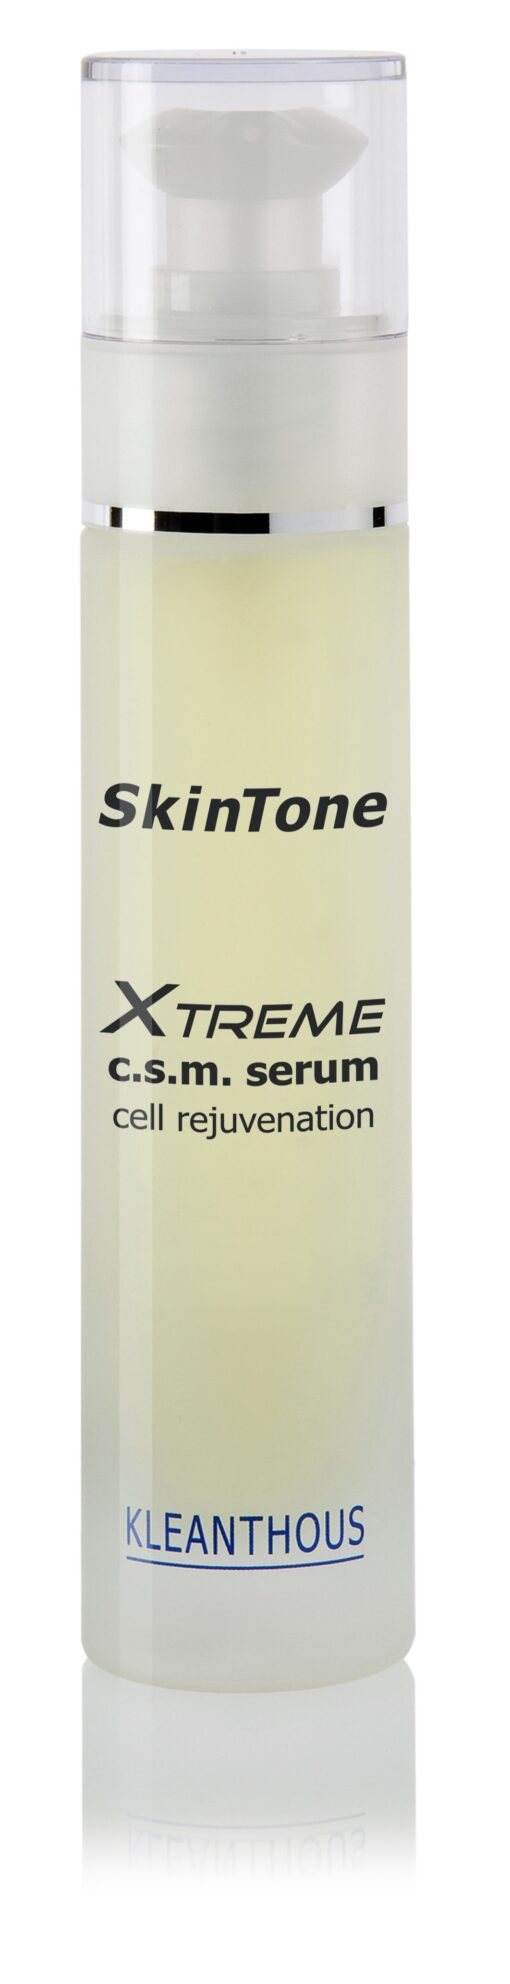 Kleanthous SkinTone xtreme c.s.m szérum (c.s.m serum)